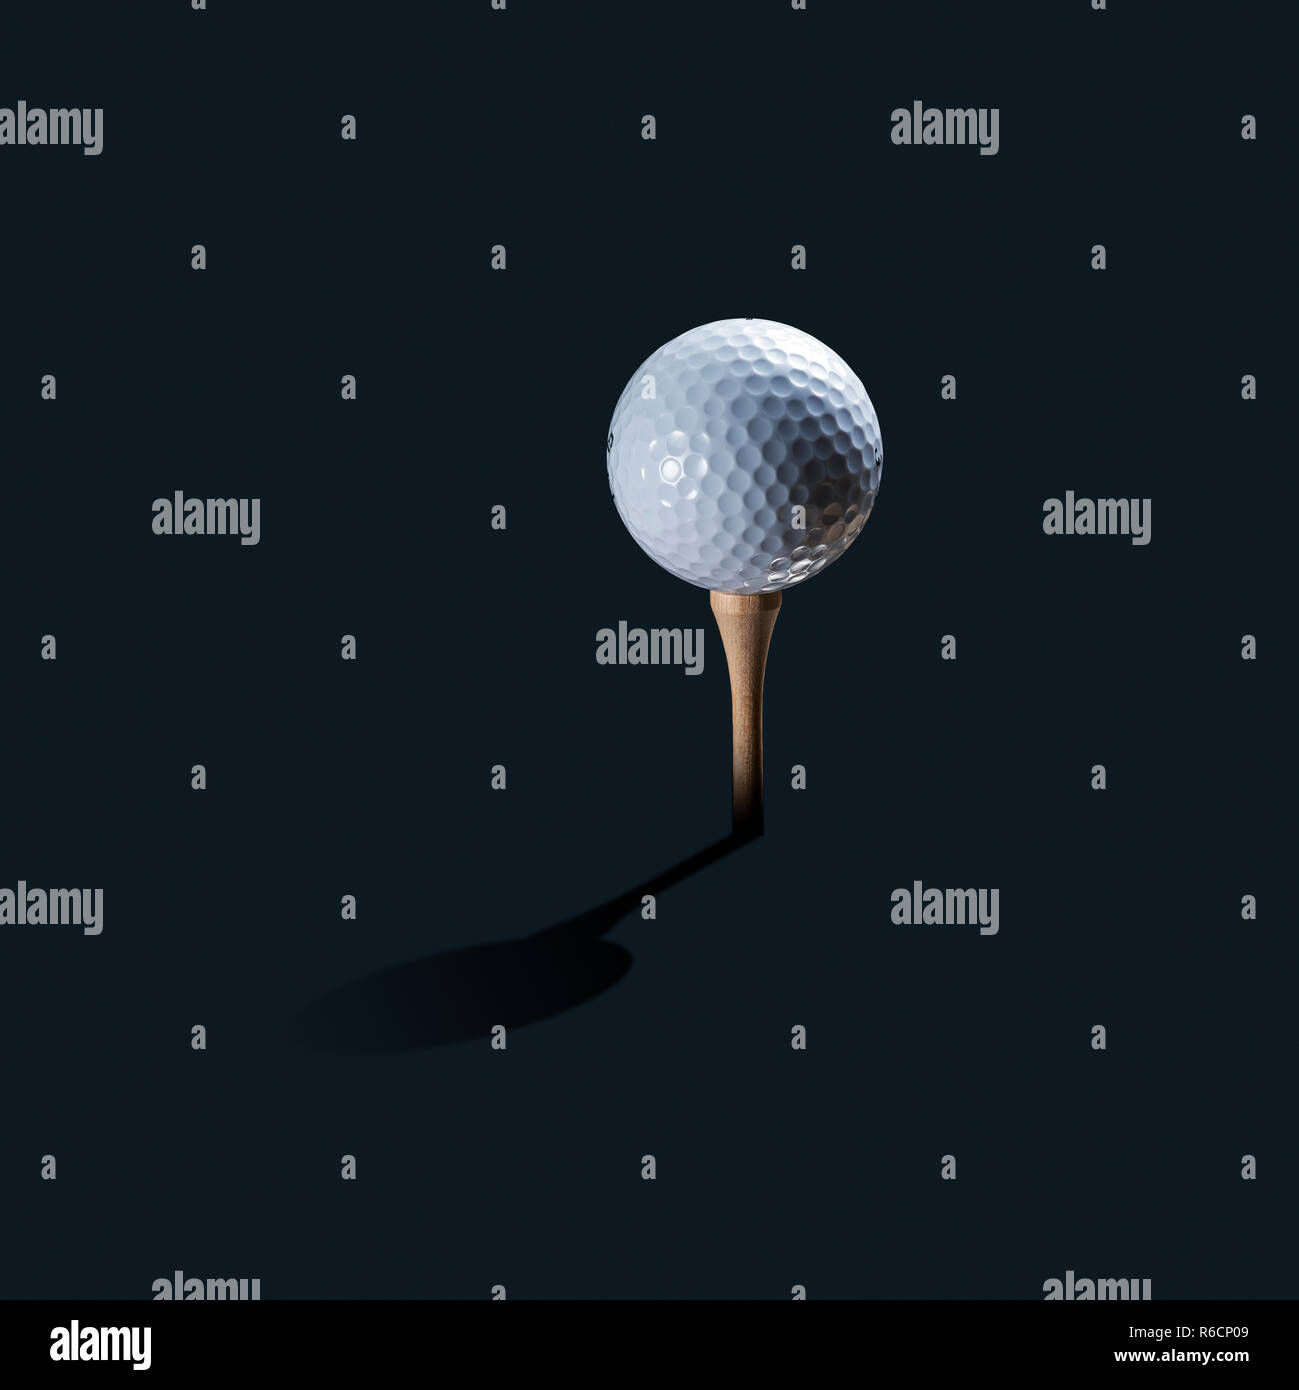 White pallina da golf sul tee di legno come ancora in vita con ombra e sfondo scuro Foto Stock